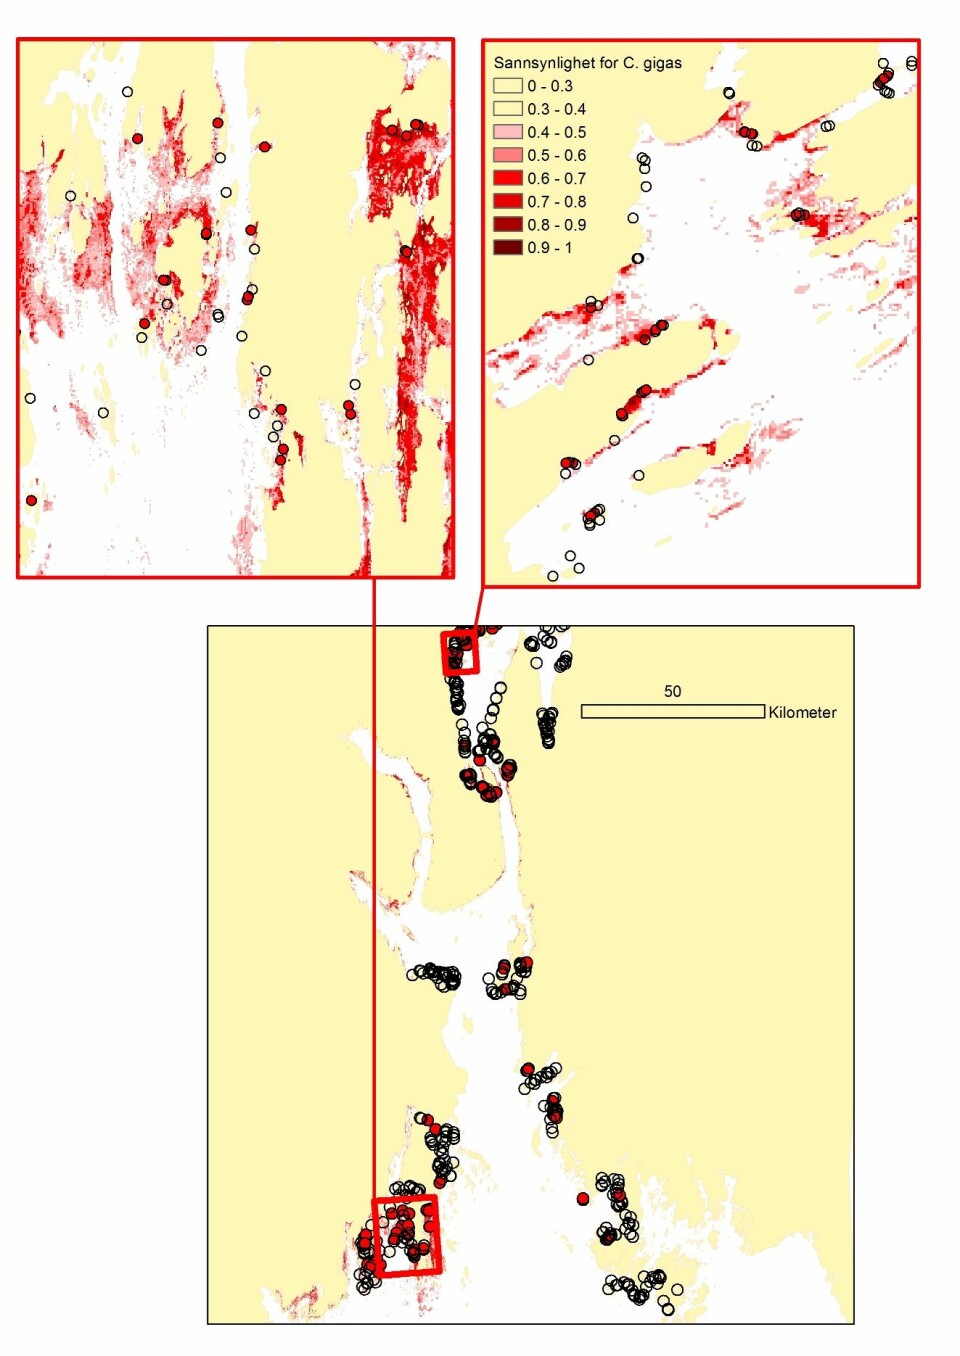 Modellert sannsynlighet for forekomst av stillehavsøsters basert på analyser av observert forekomst (røde punkter) og observert fravær (åpne sirkler) av arten i årene 2009-2012 i Oslofjorden.